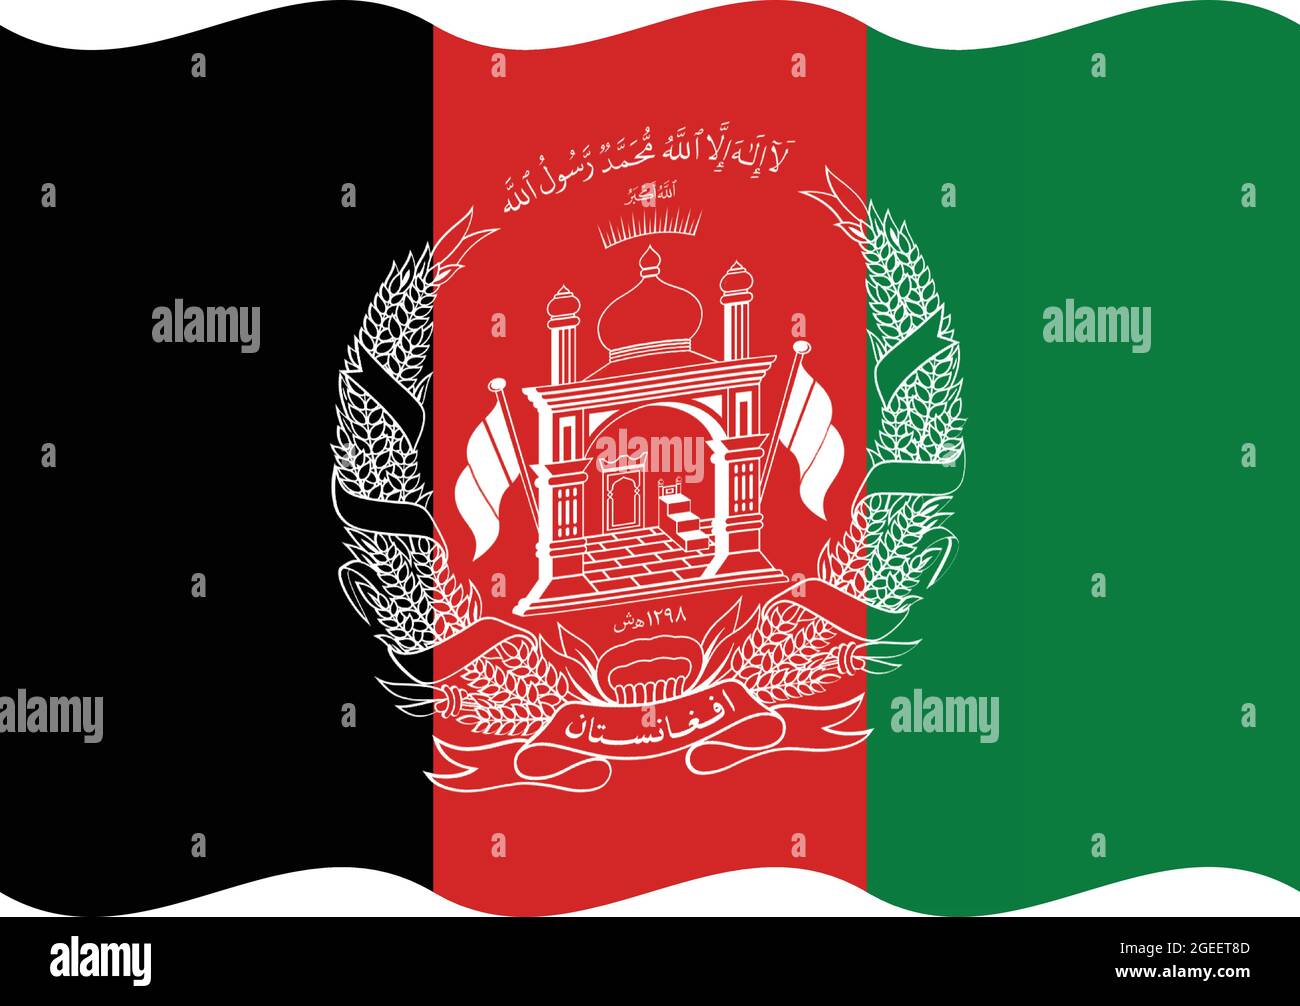 Gewellte Nationalflagge Afghanistans Originalgröße und Farben Vektorgrafik, Islamische Republik Afghanistan Flagge nationales Emblem Wappen Stock Vektor